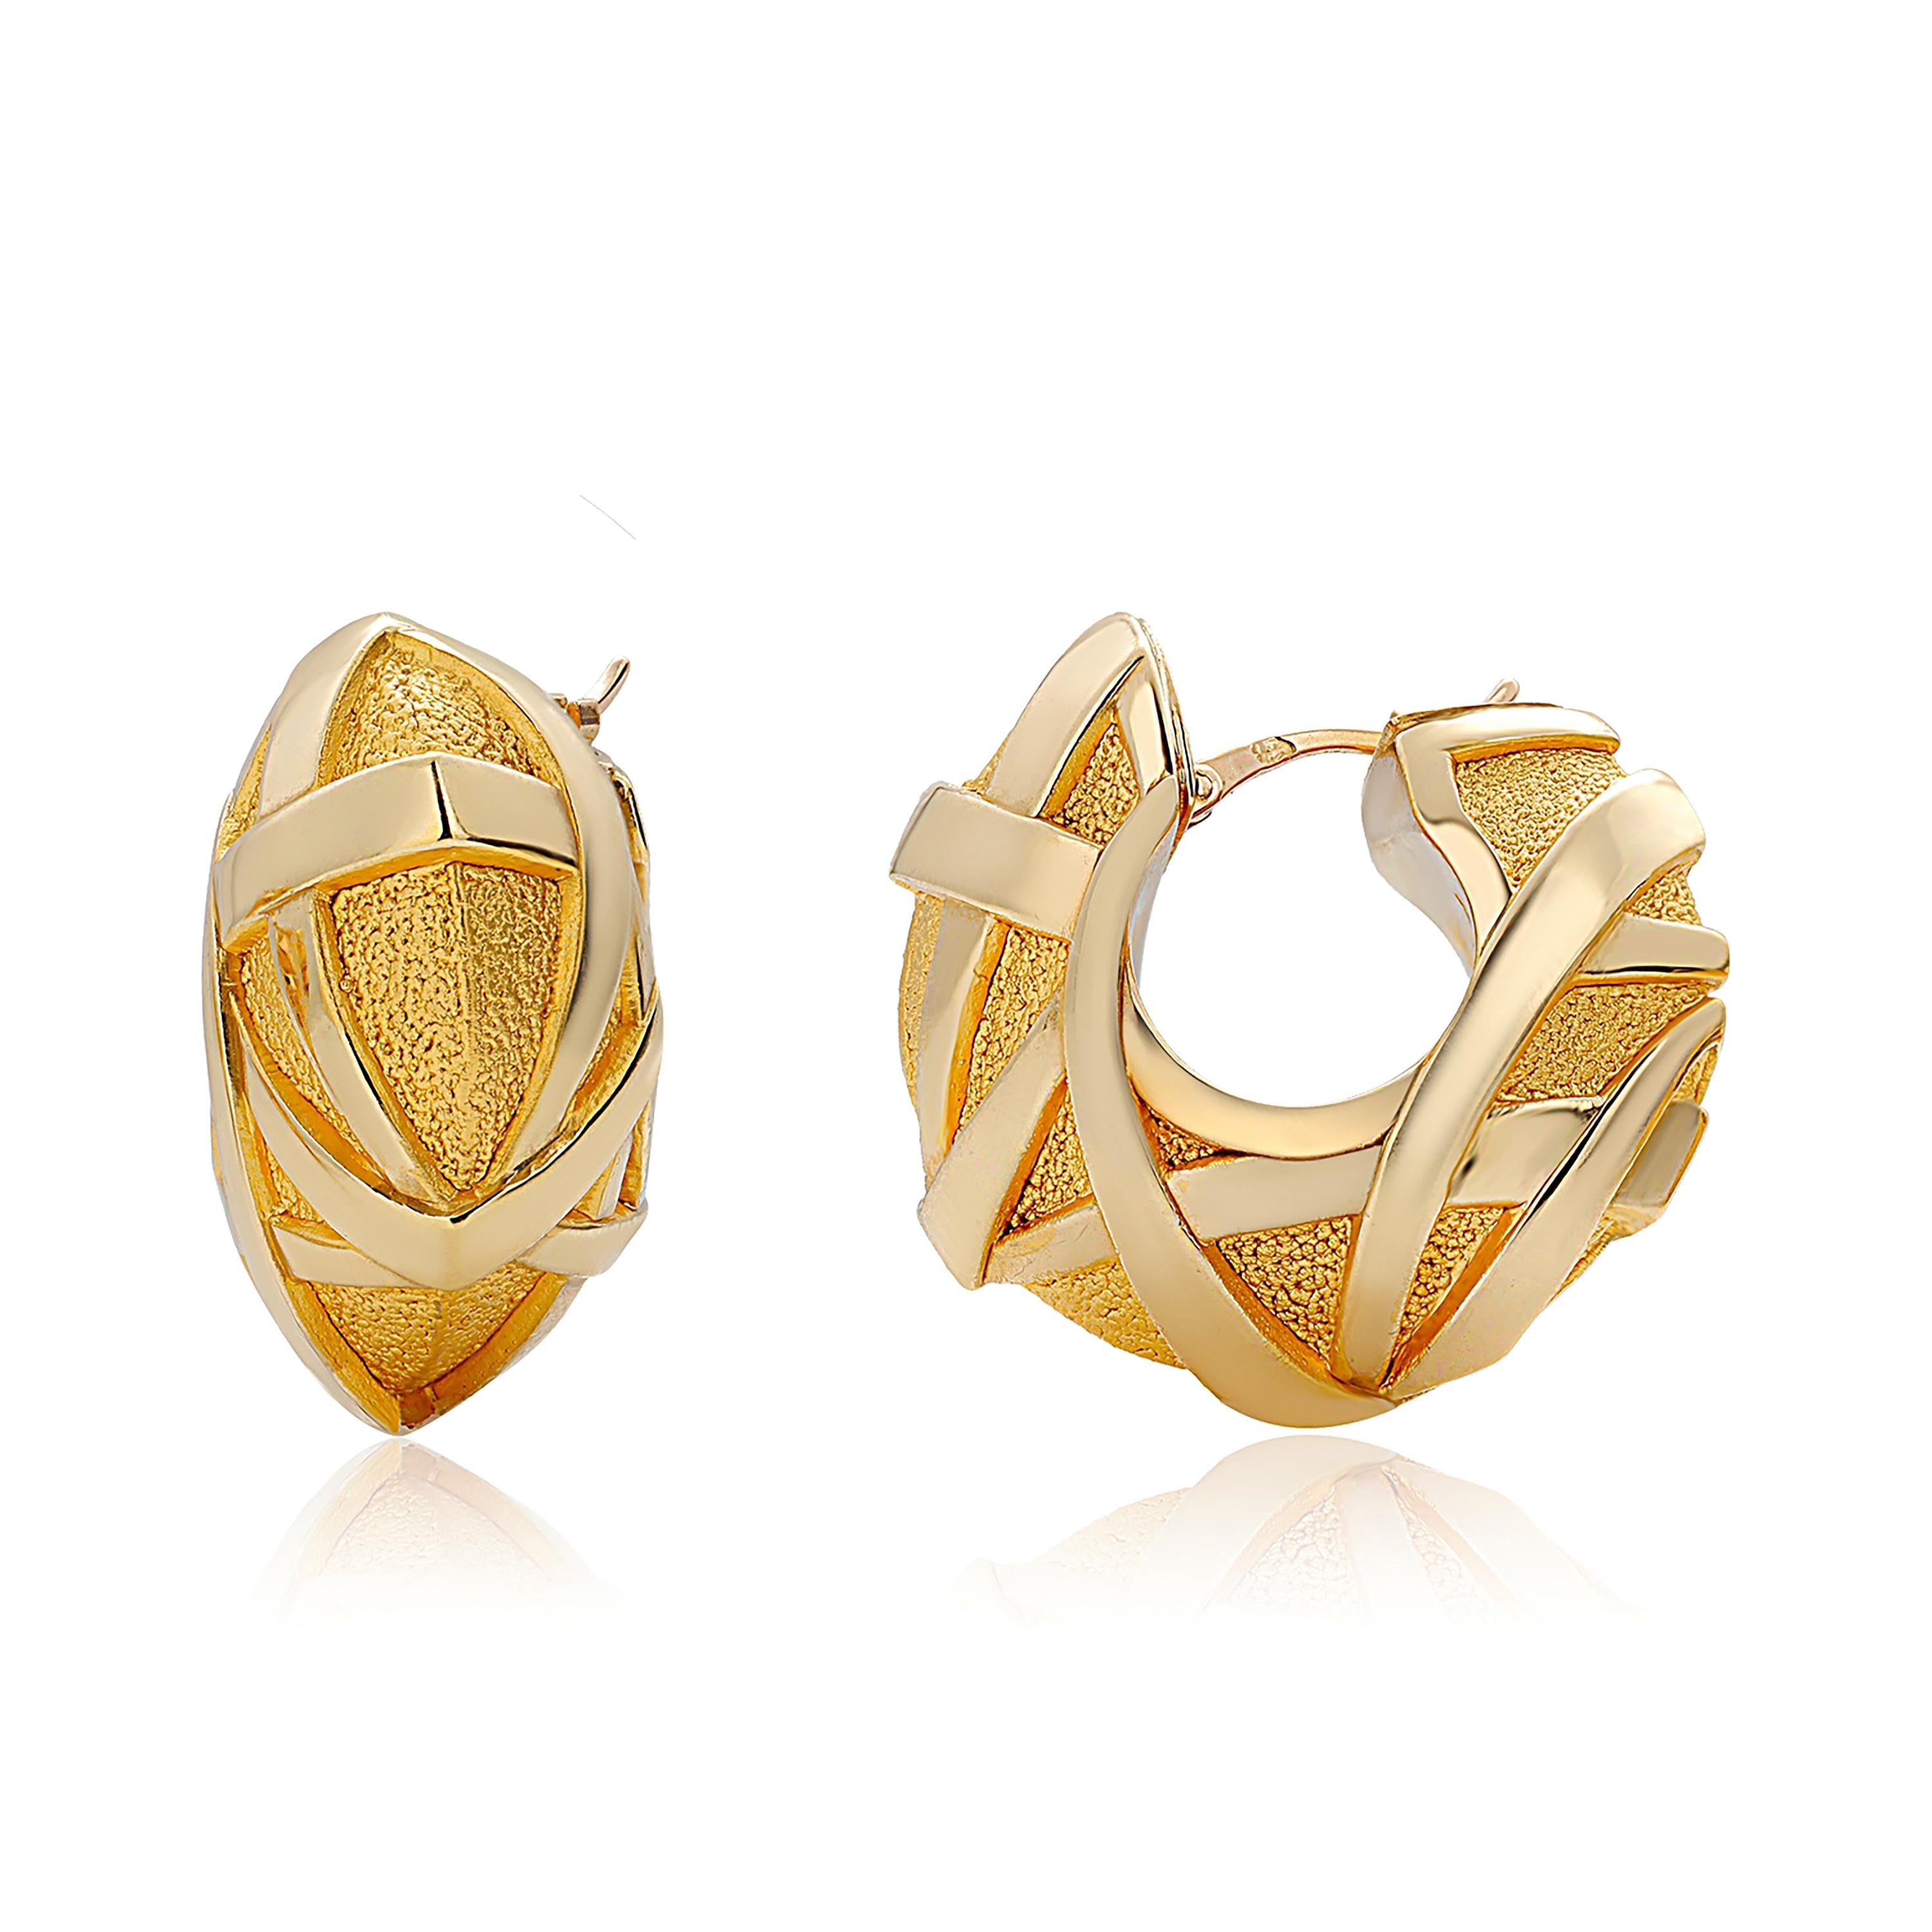 Eighteen Karat Yellow Gold Large Hoop Vintage Earrings with Geometric Design 1